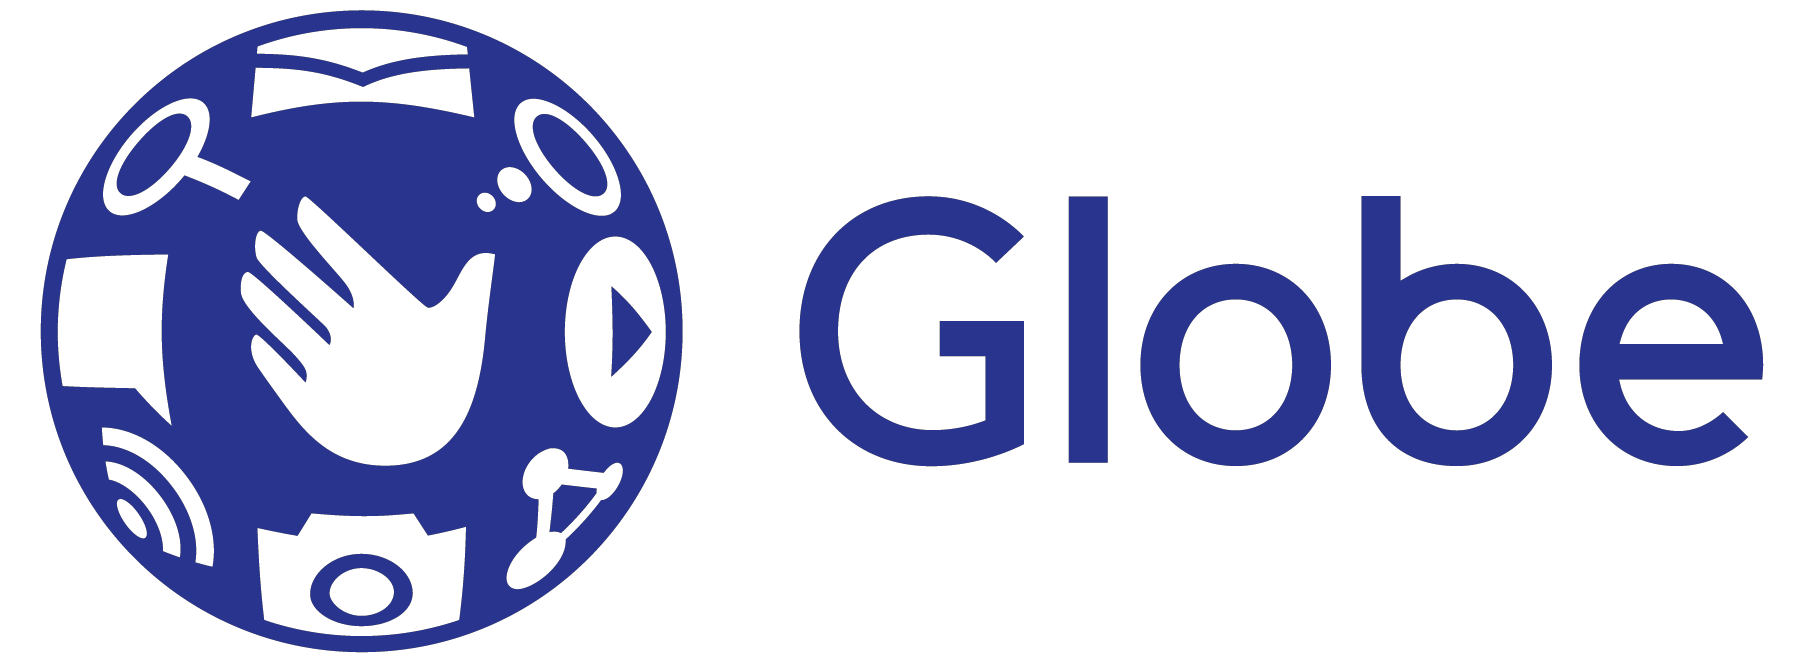 Globe mengatakan layanan dipulihkan di Antique, Biliran, Guimaras, Samar;  Dinagat, Siargao, Surigao sekarang terhubung Berita GMA Online